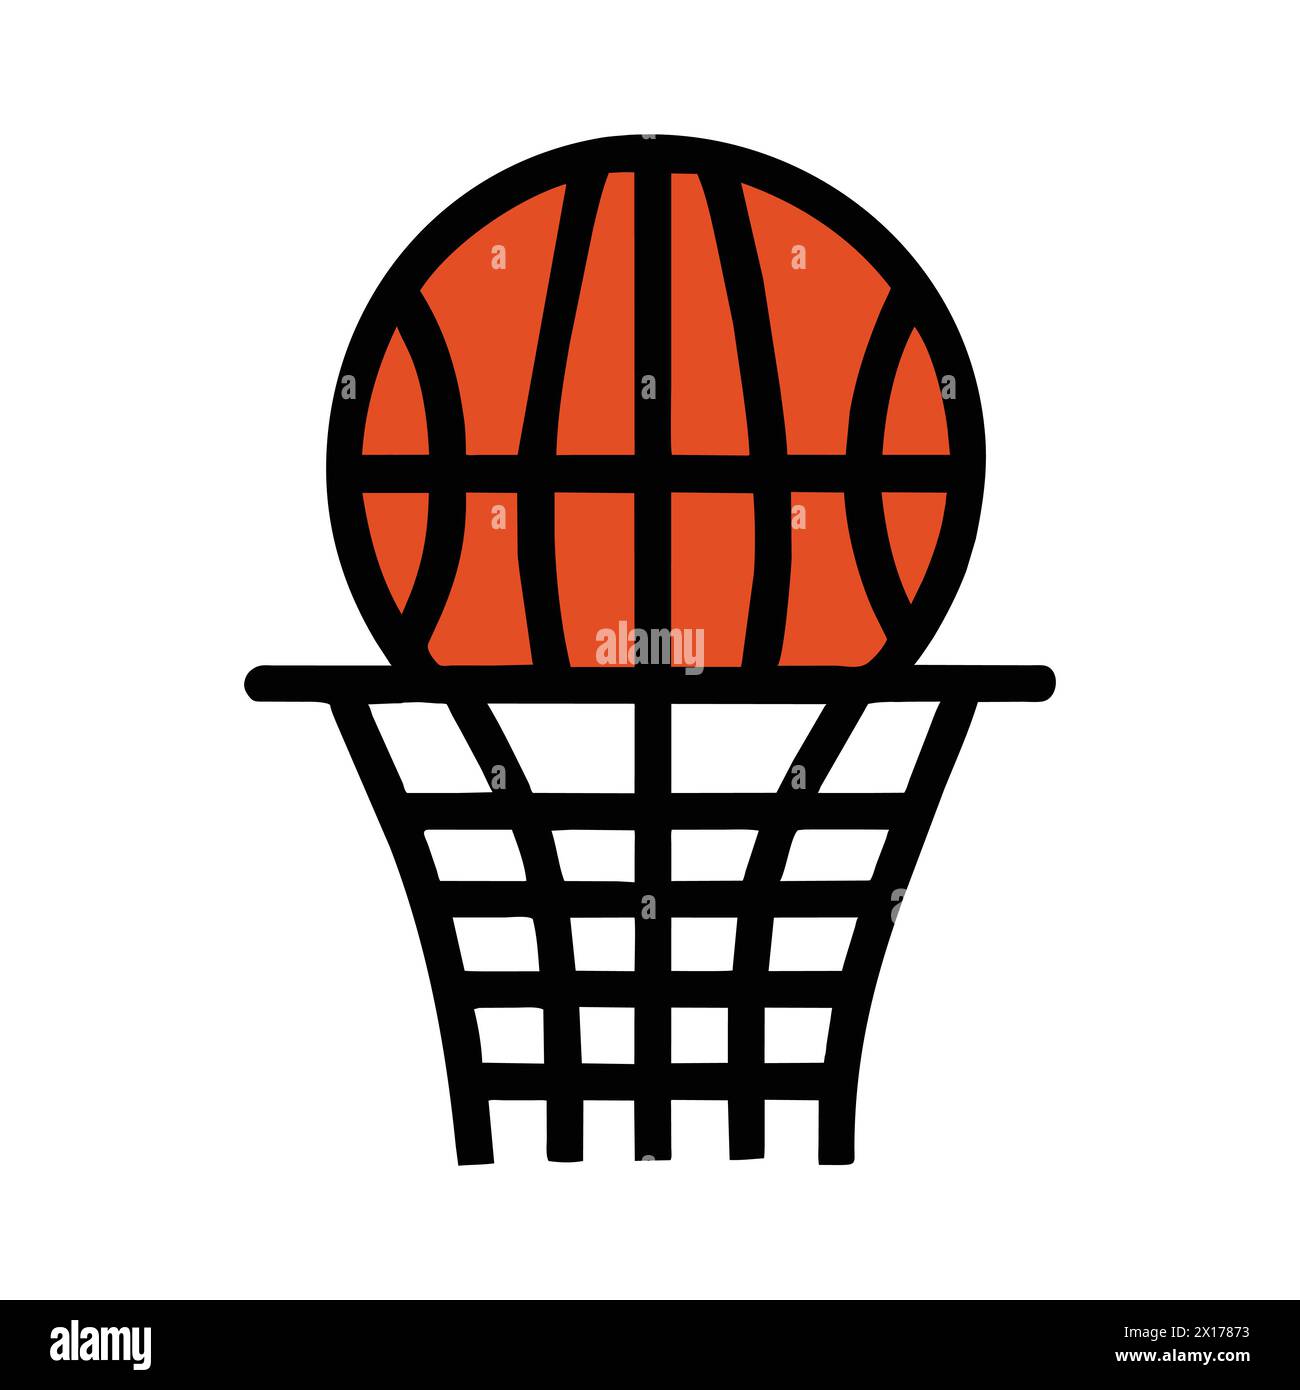 Icona tablero de basketbol - "icona campo da pallacanestro - Design isolato ideale per progetti e grafica sportiva" Illustrazione Vettoriale